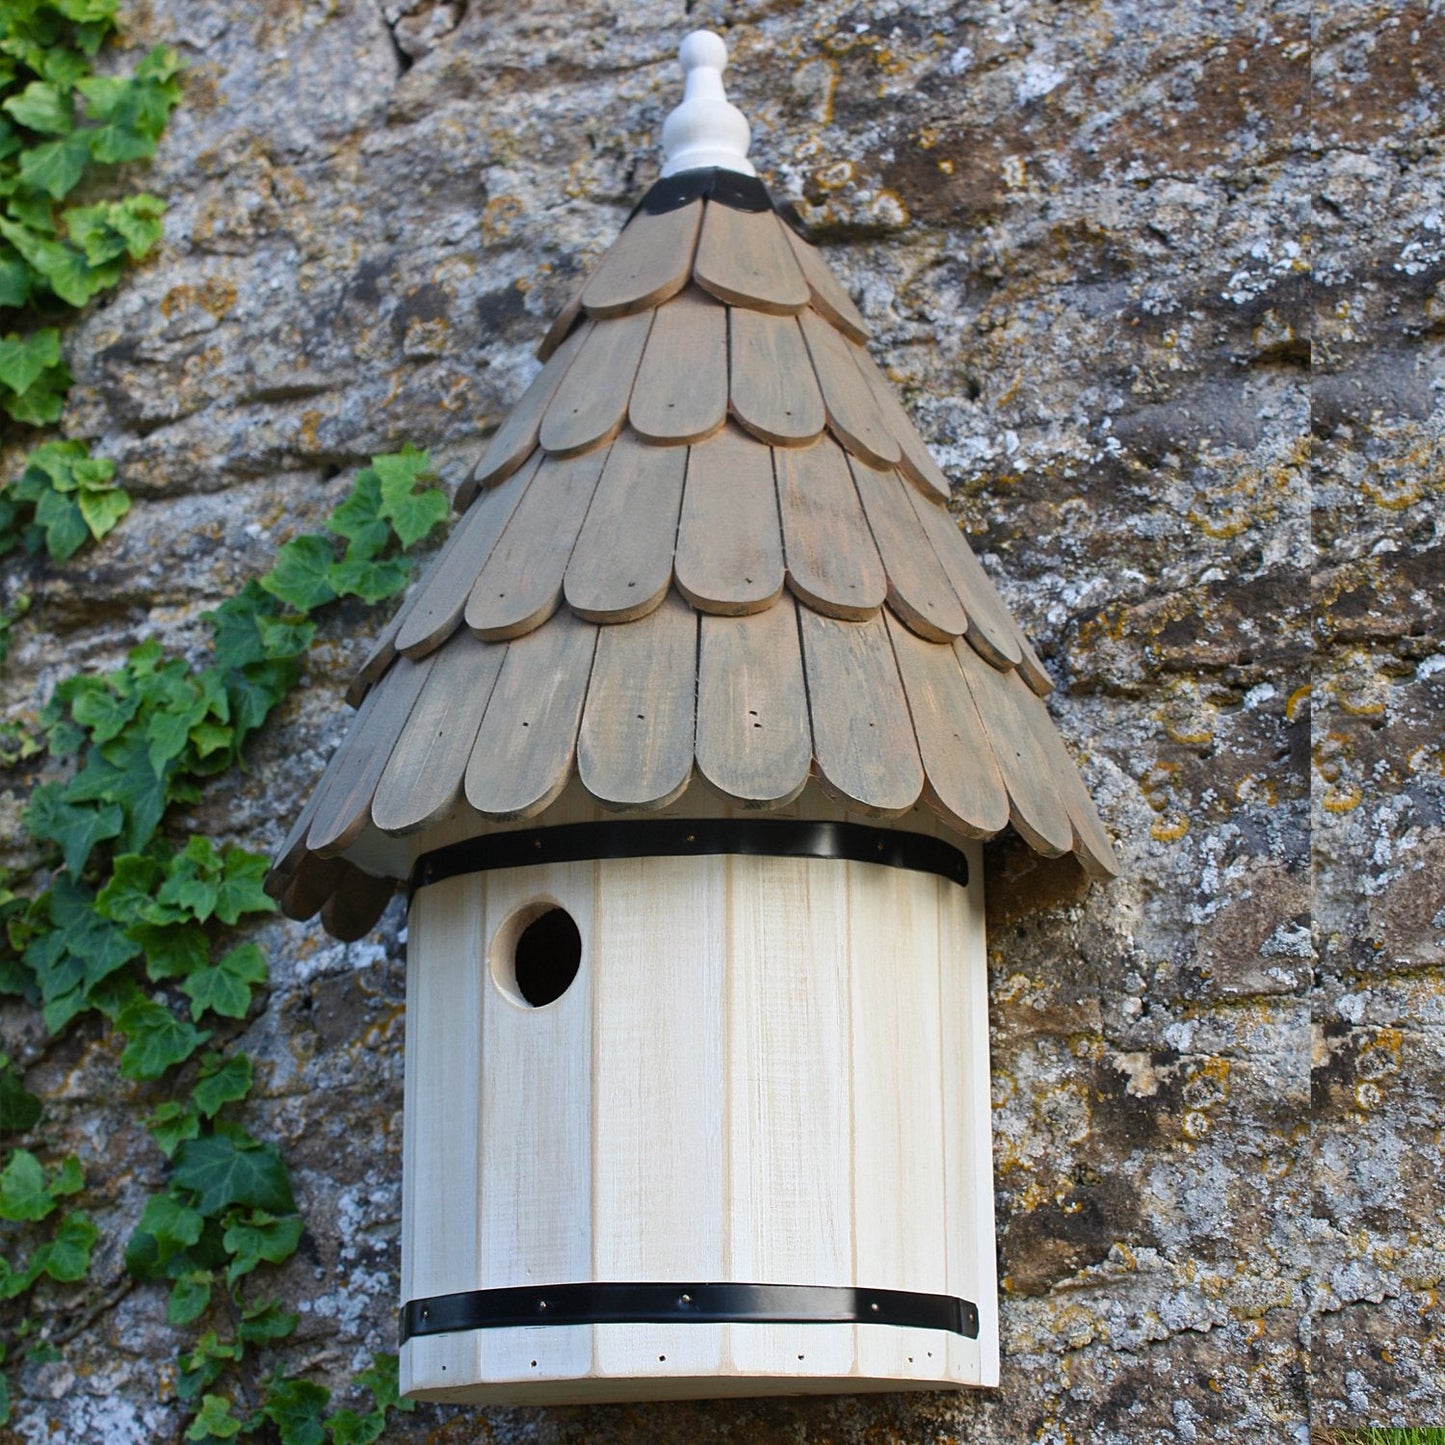 WW Fuglekasse "Dovecote"  ("Dovecote" nest box)